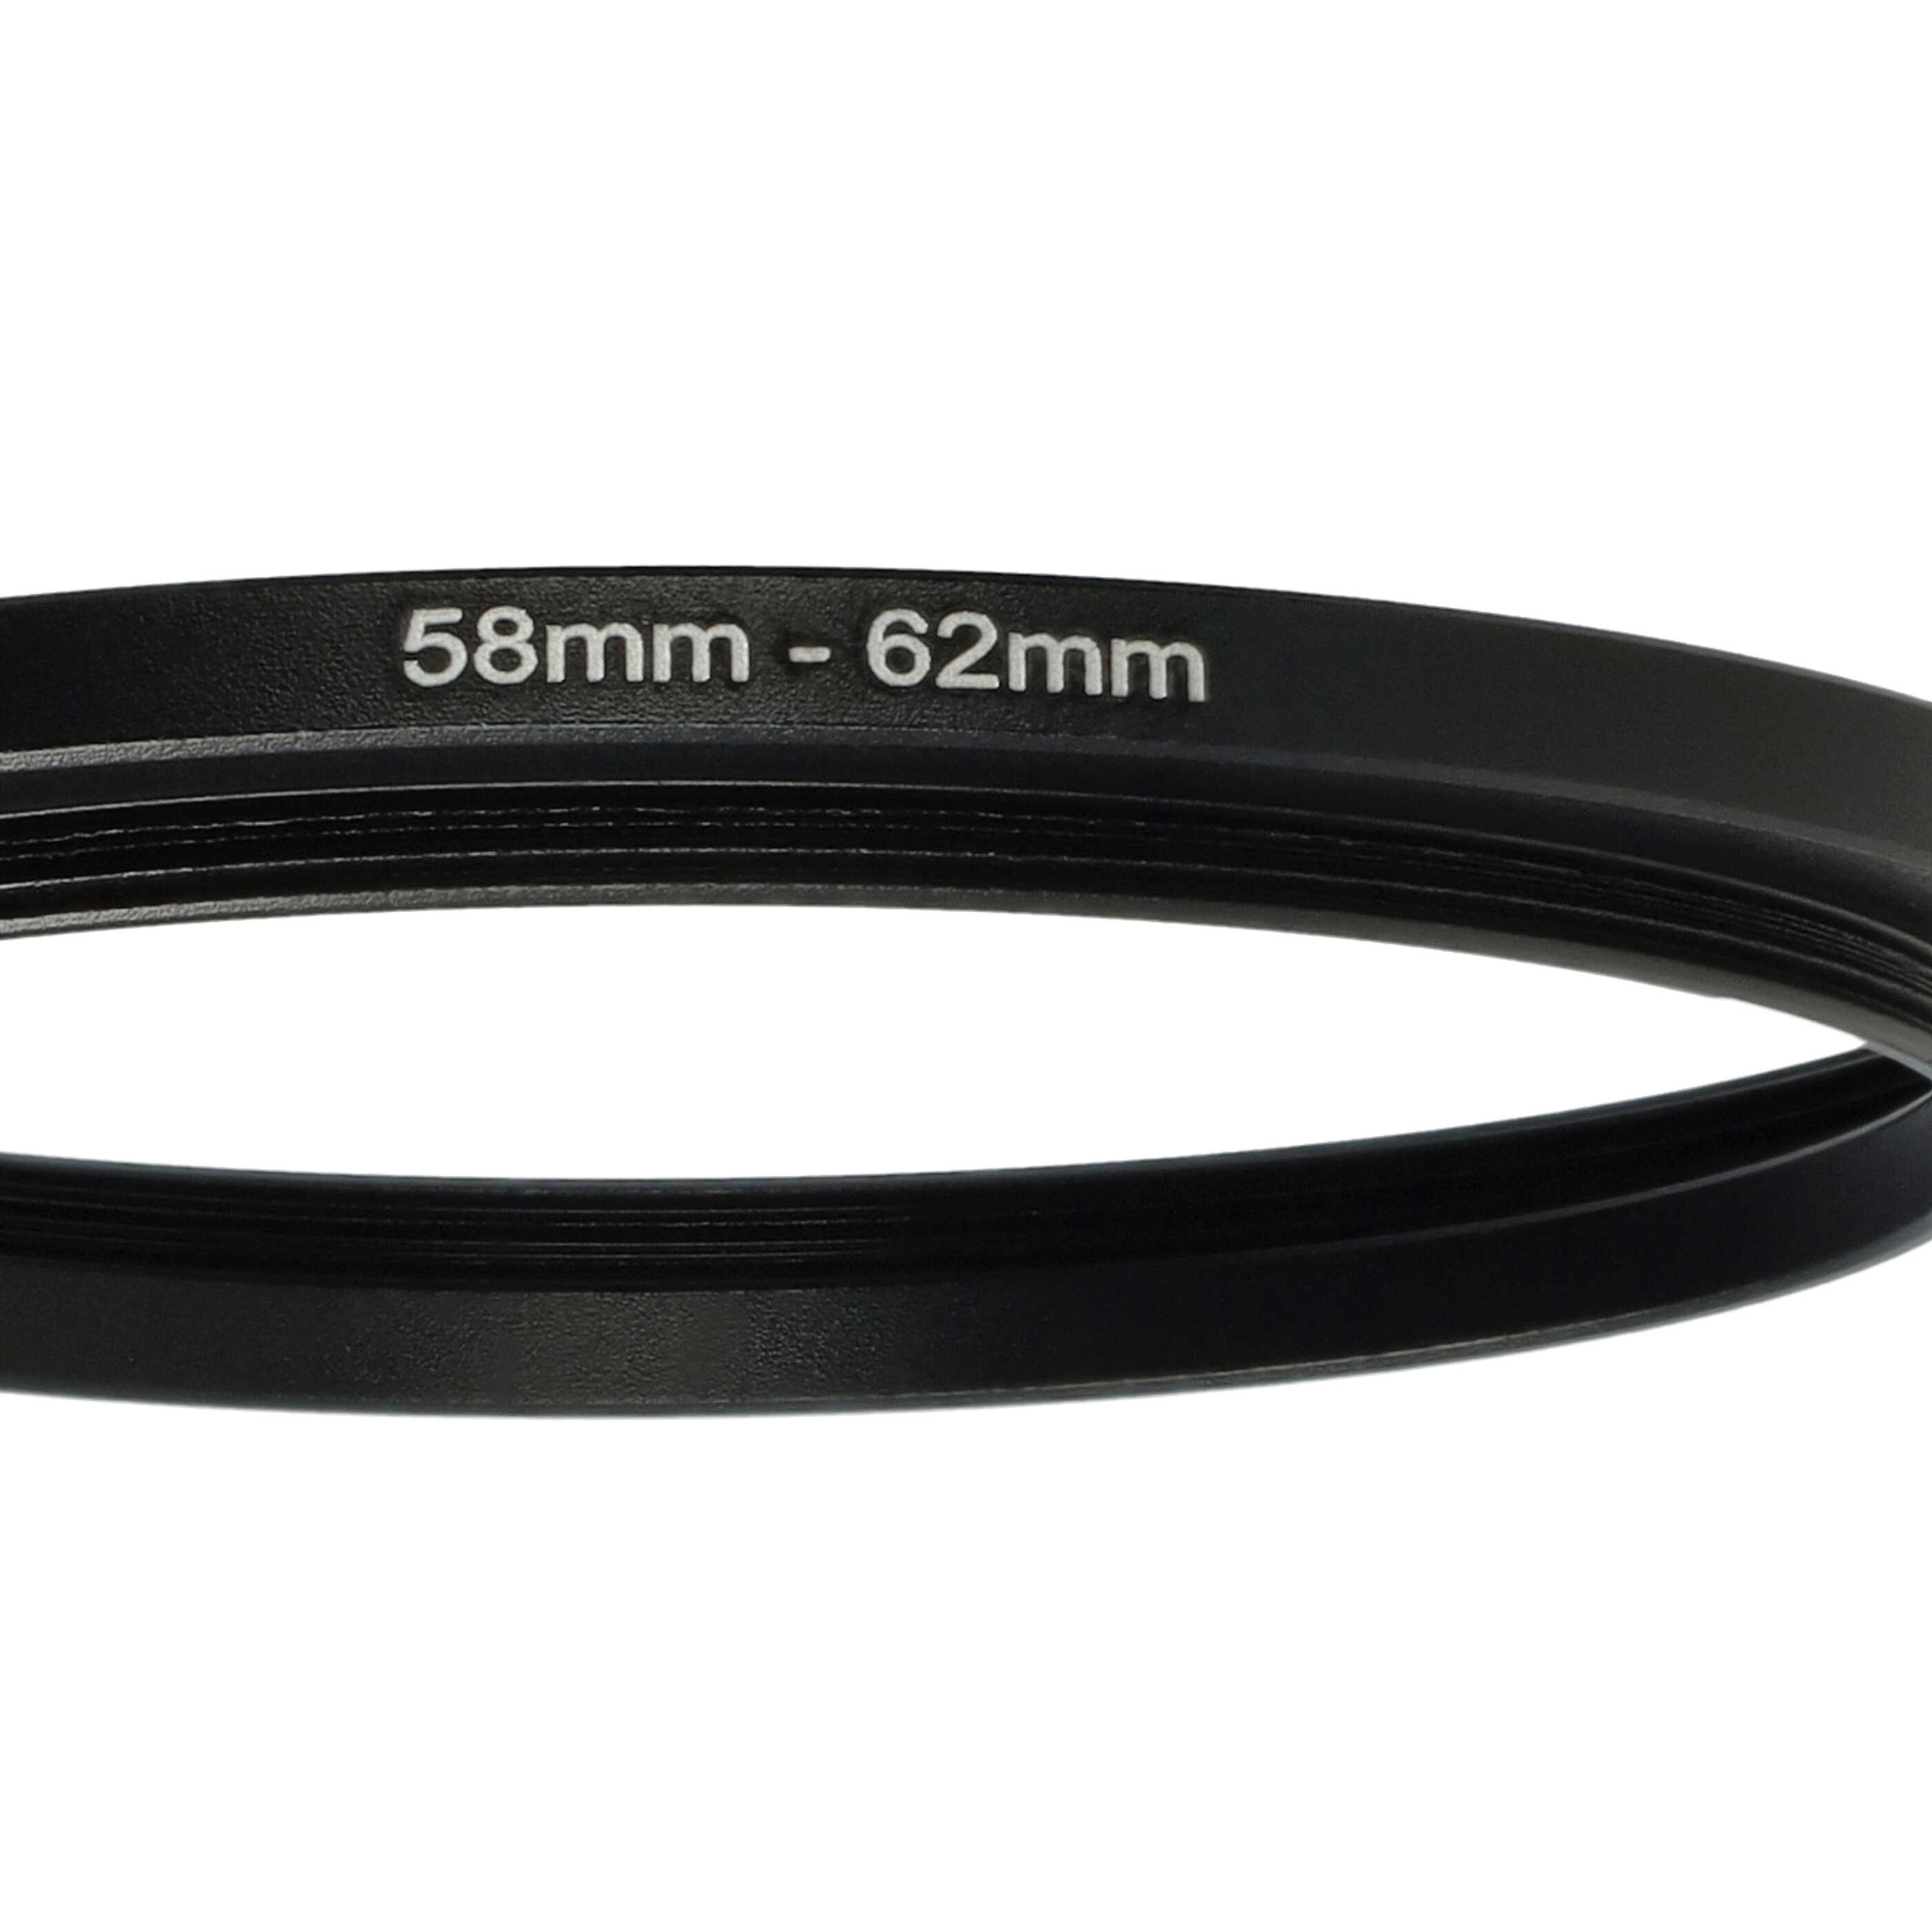 Step-Up-Ring Adapter 58 mm auf 62 mm passend für diverse Kamera-Objektive - Filteradapter